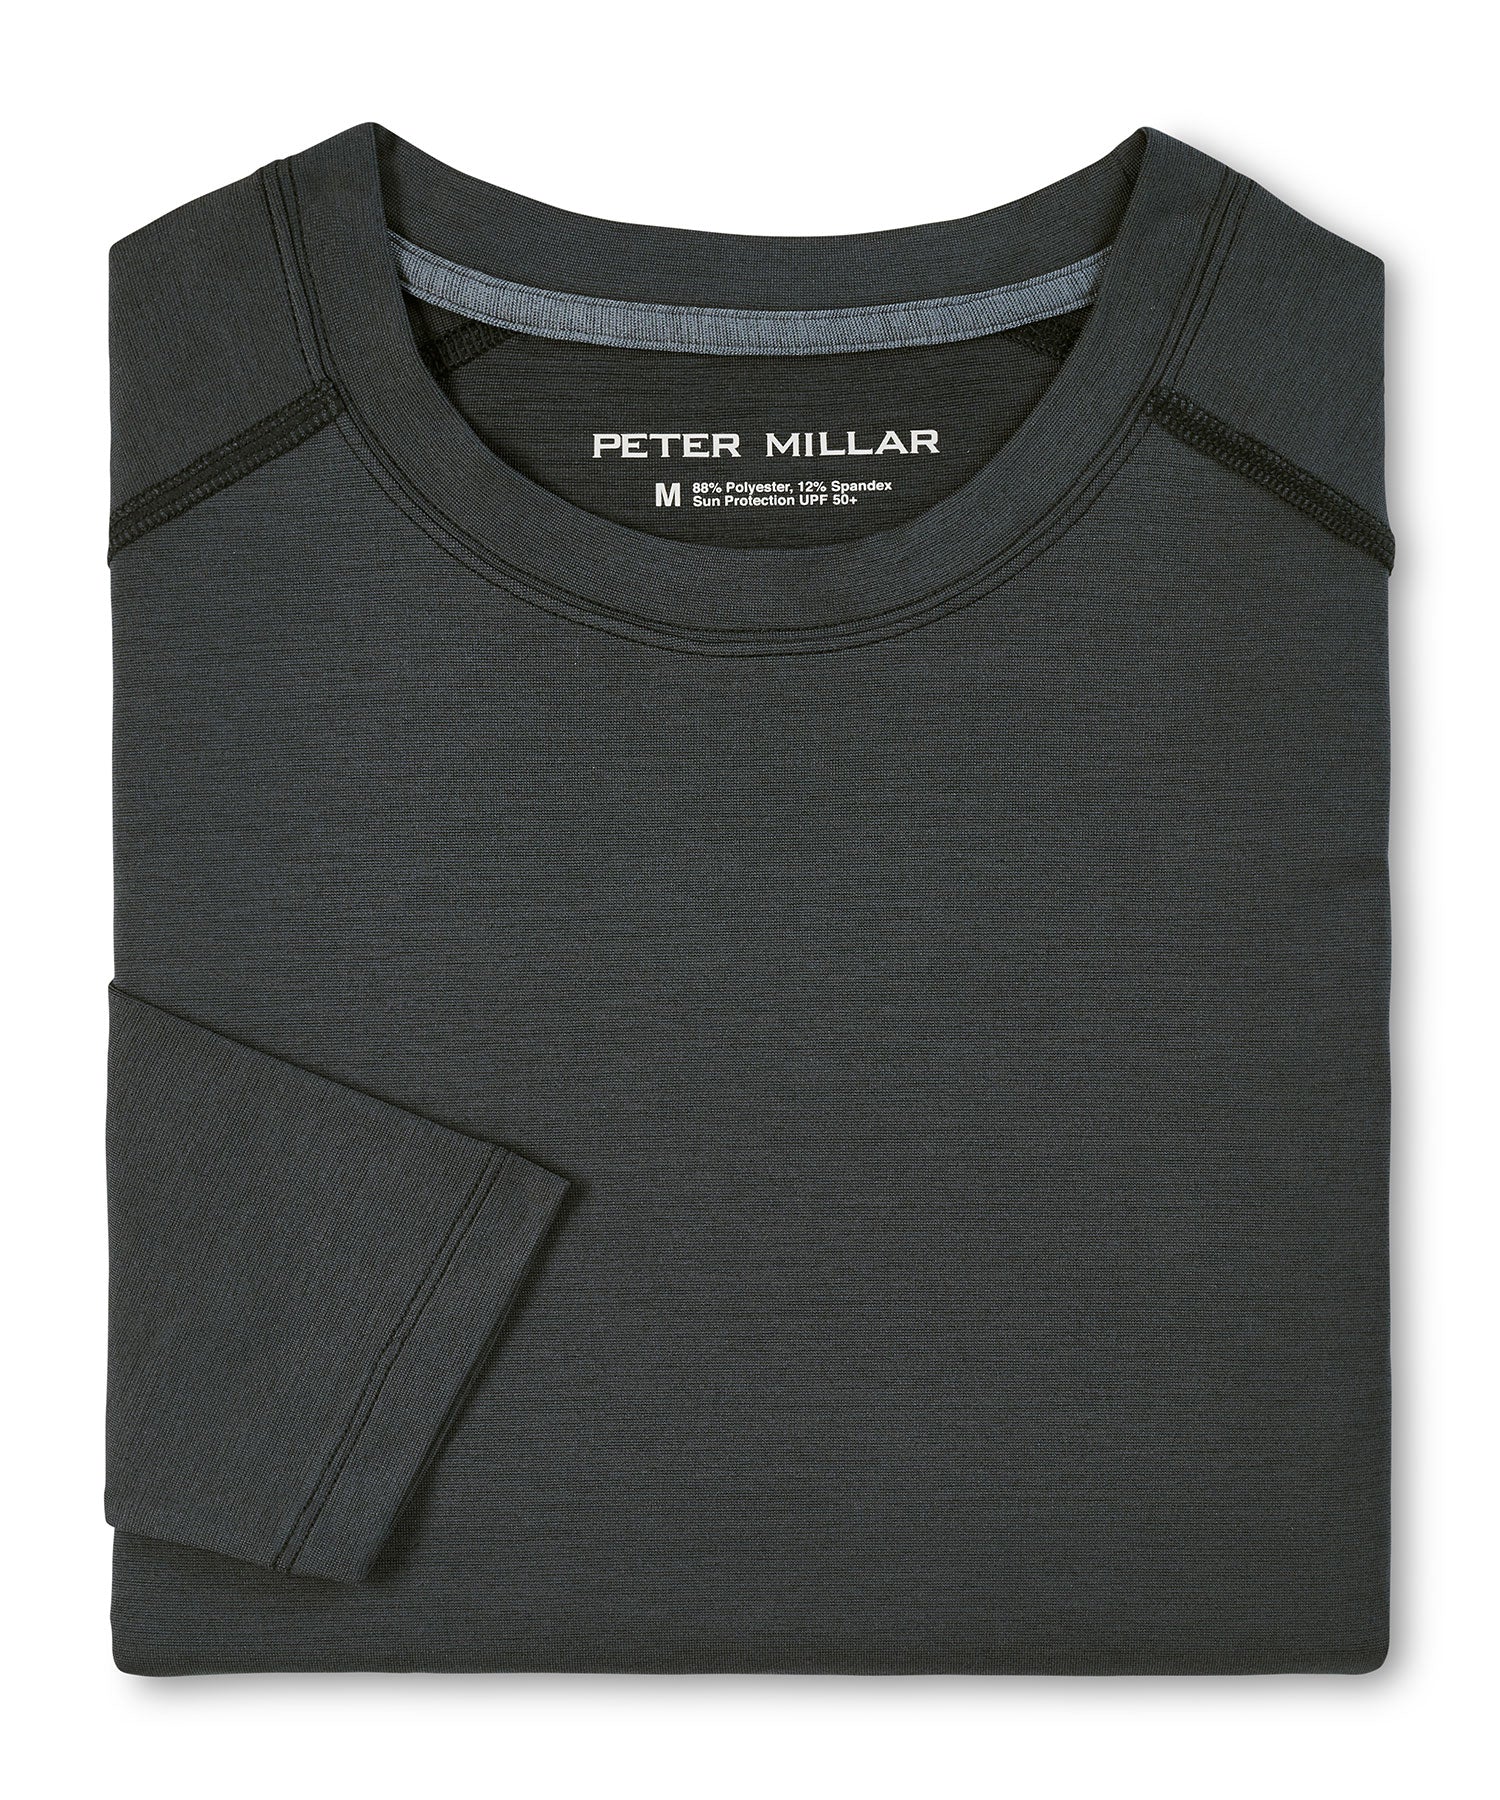 Peter Millar Long Sleeve Aurora Performance T-Shirt, Men's Big & Tall